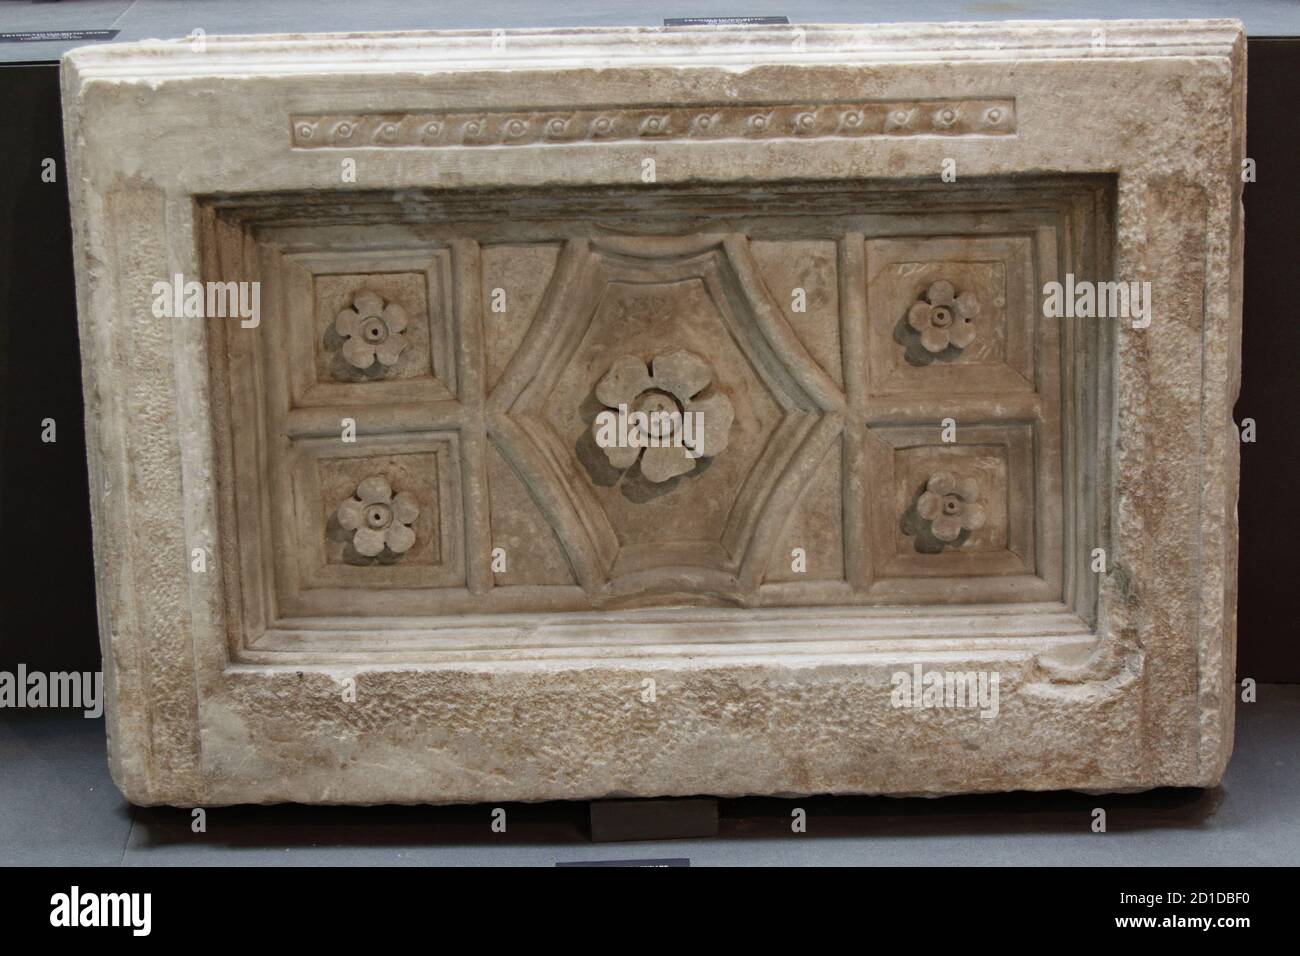 Museo Archeologico di la Spezia, Italia - estate 2020: Urna cineraria in marmo del 3 ° secolo a.C. Foto Stock